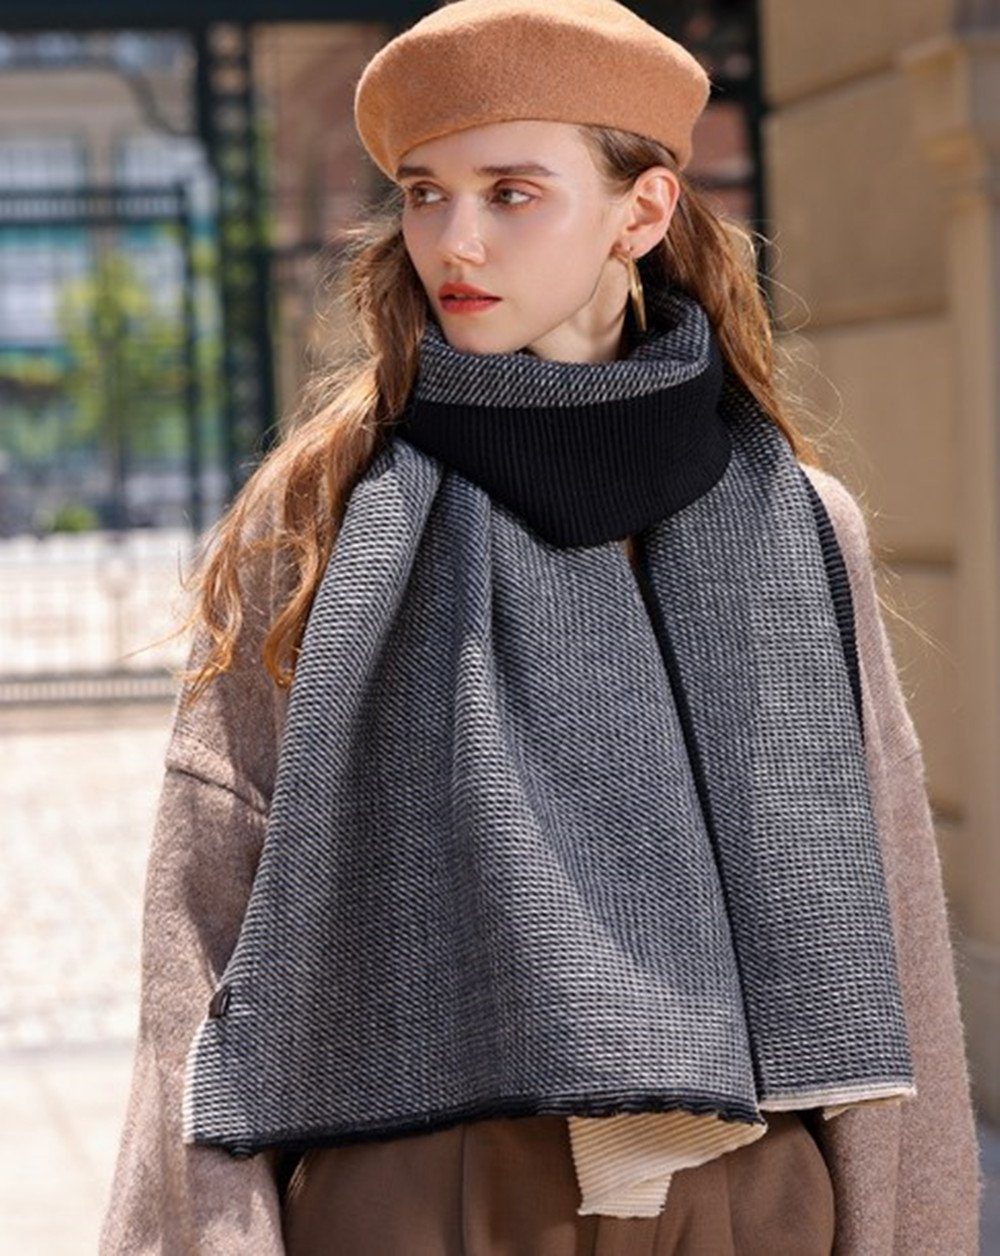 XDeer Modeschal Damen Schal,XL Winter Schal Poncho Qualität, zweiseitige feine Linie,Damen Halstuch Geschenk für Frauen in verschiedenen Farben gray